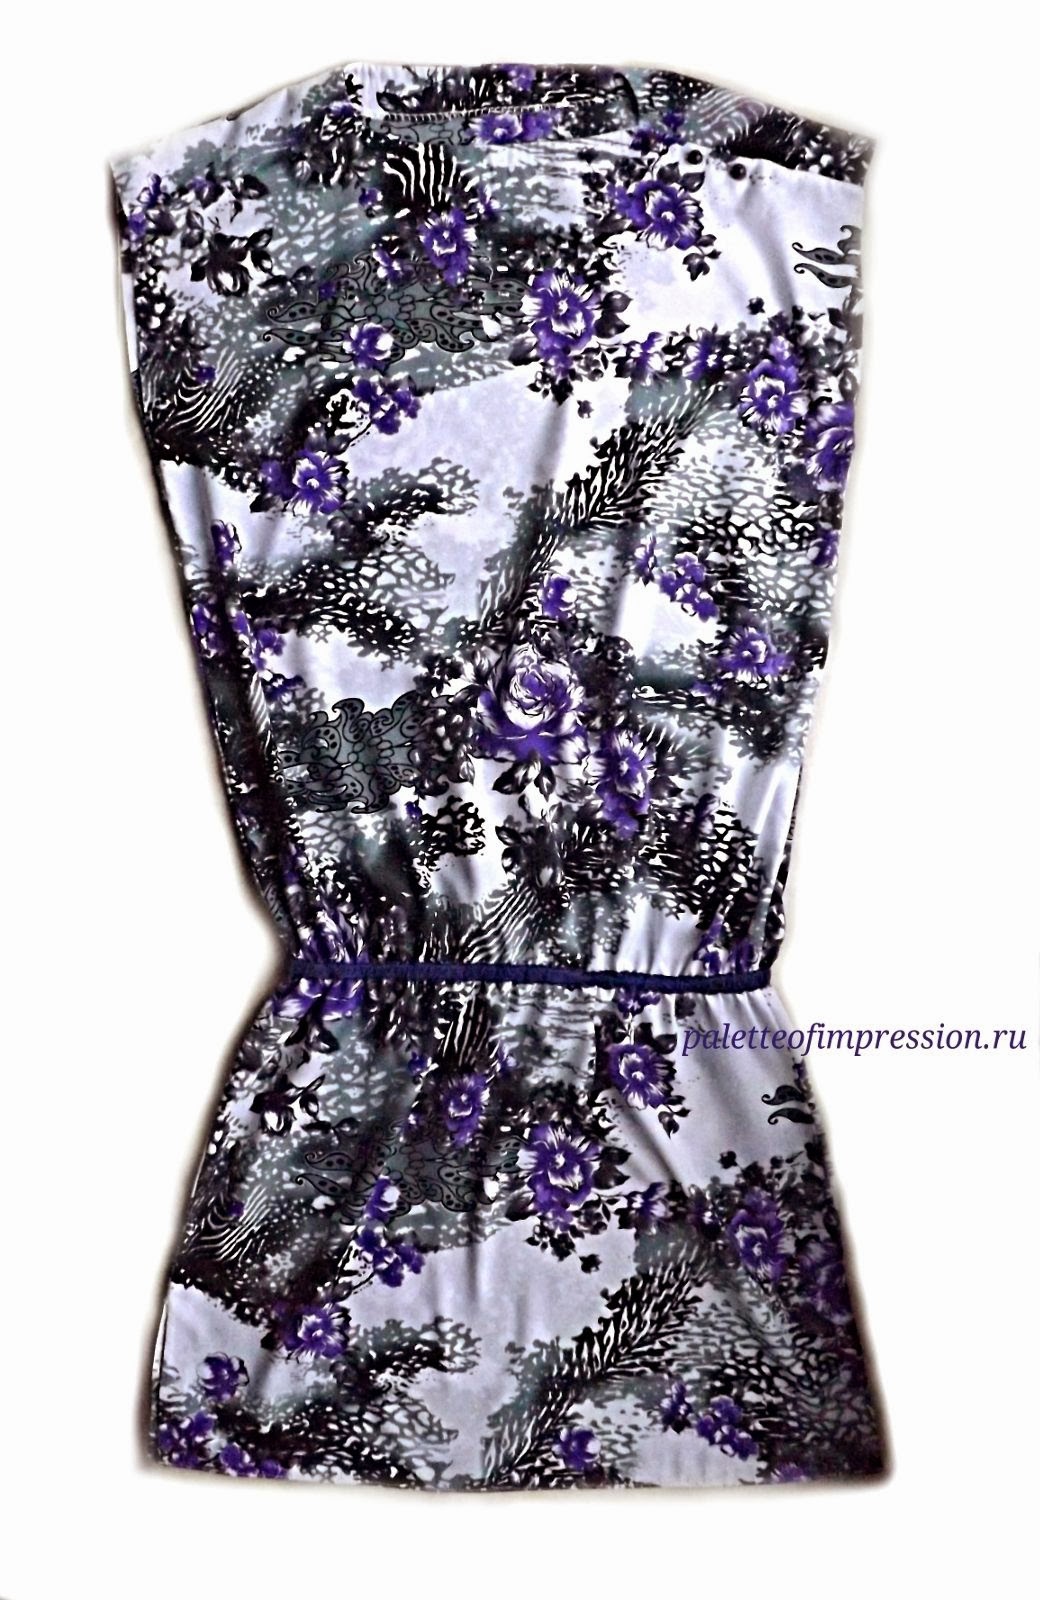 Платье прямого силуэта из плательной вискозы. Выкройка Burda 7/2012. Блог Вся палитра впечатлений.